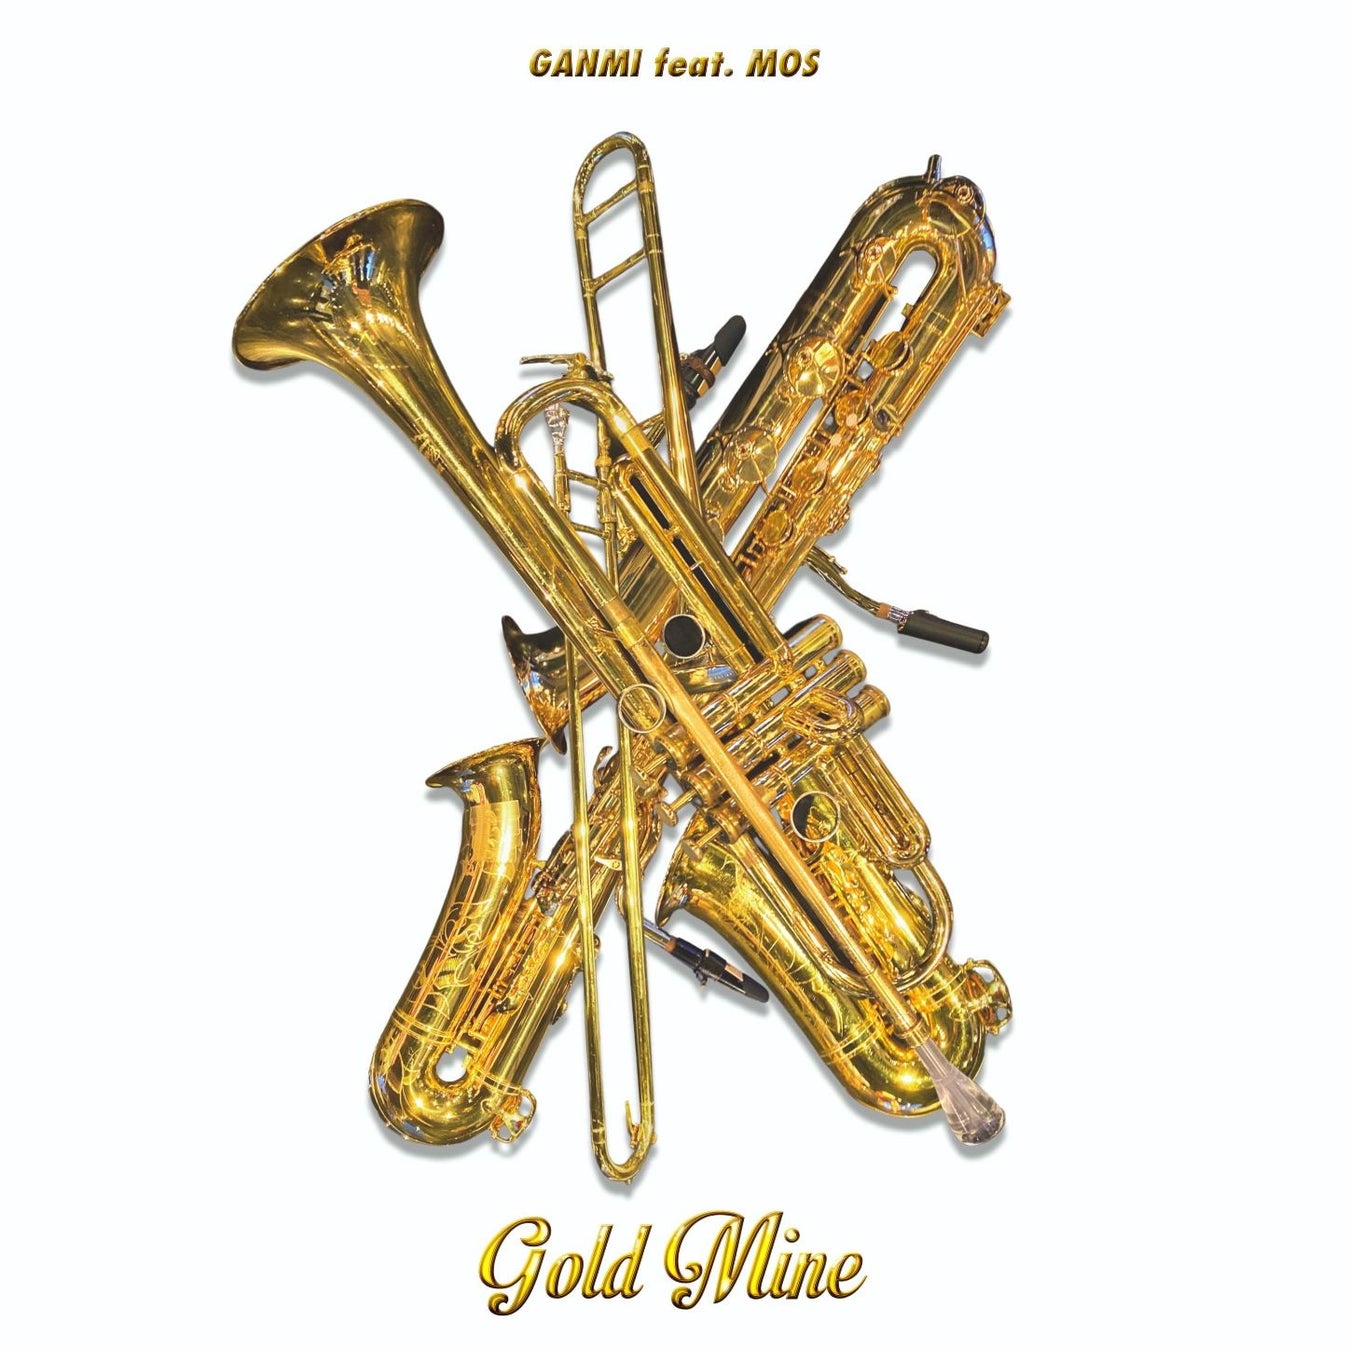 世界大会覇者ダンスアーティスト「GANMI」、SNSで話題沸騰中の管楽器ガールズユニット「MOS」とのコラボレーション楽曲『Gold Mine』を発表のサブ画像2